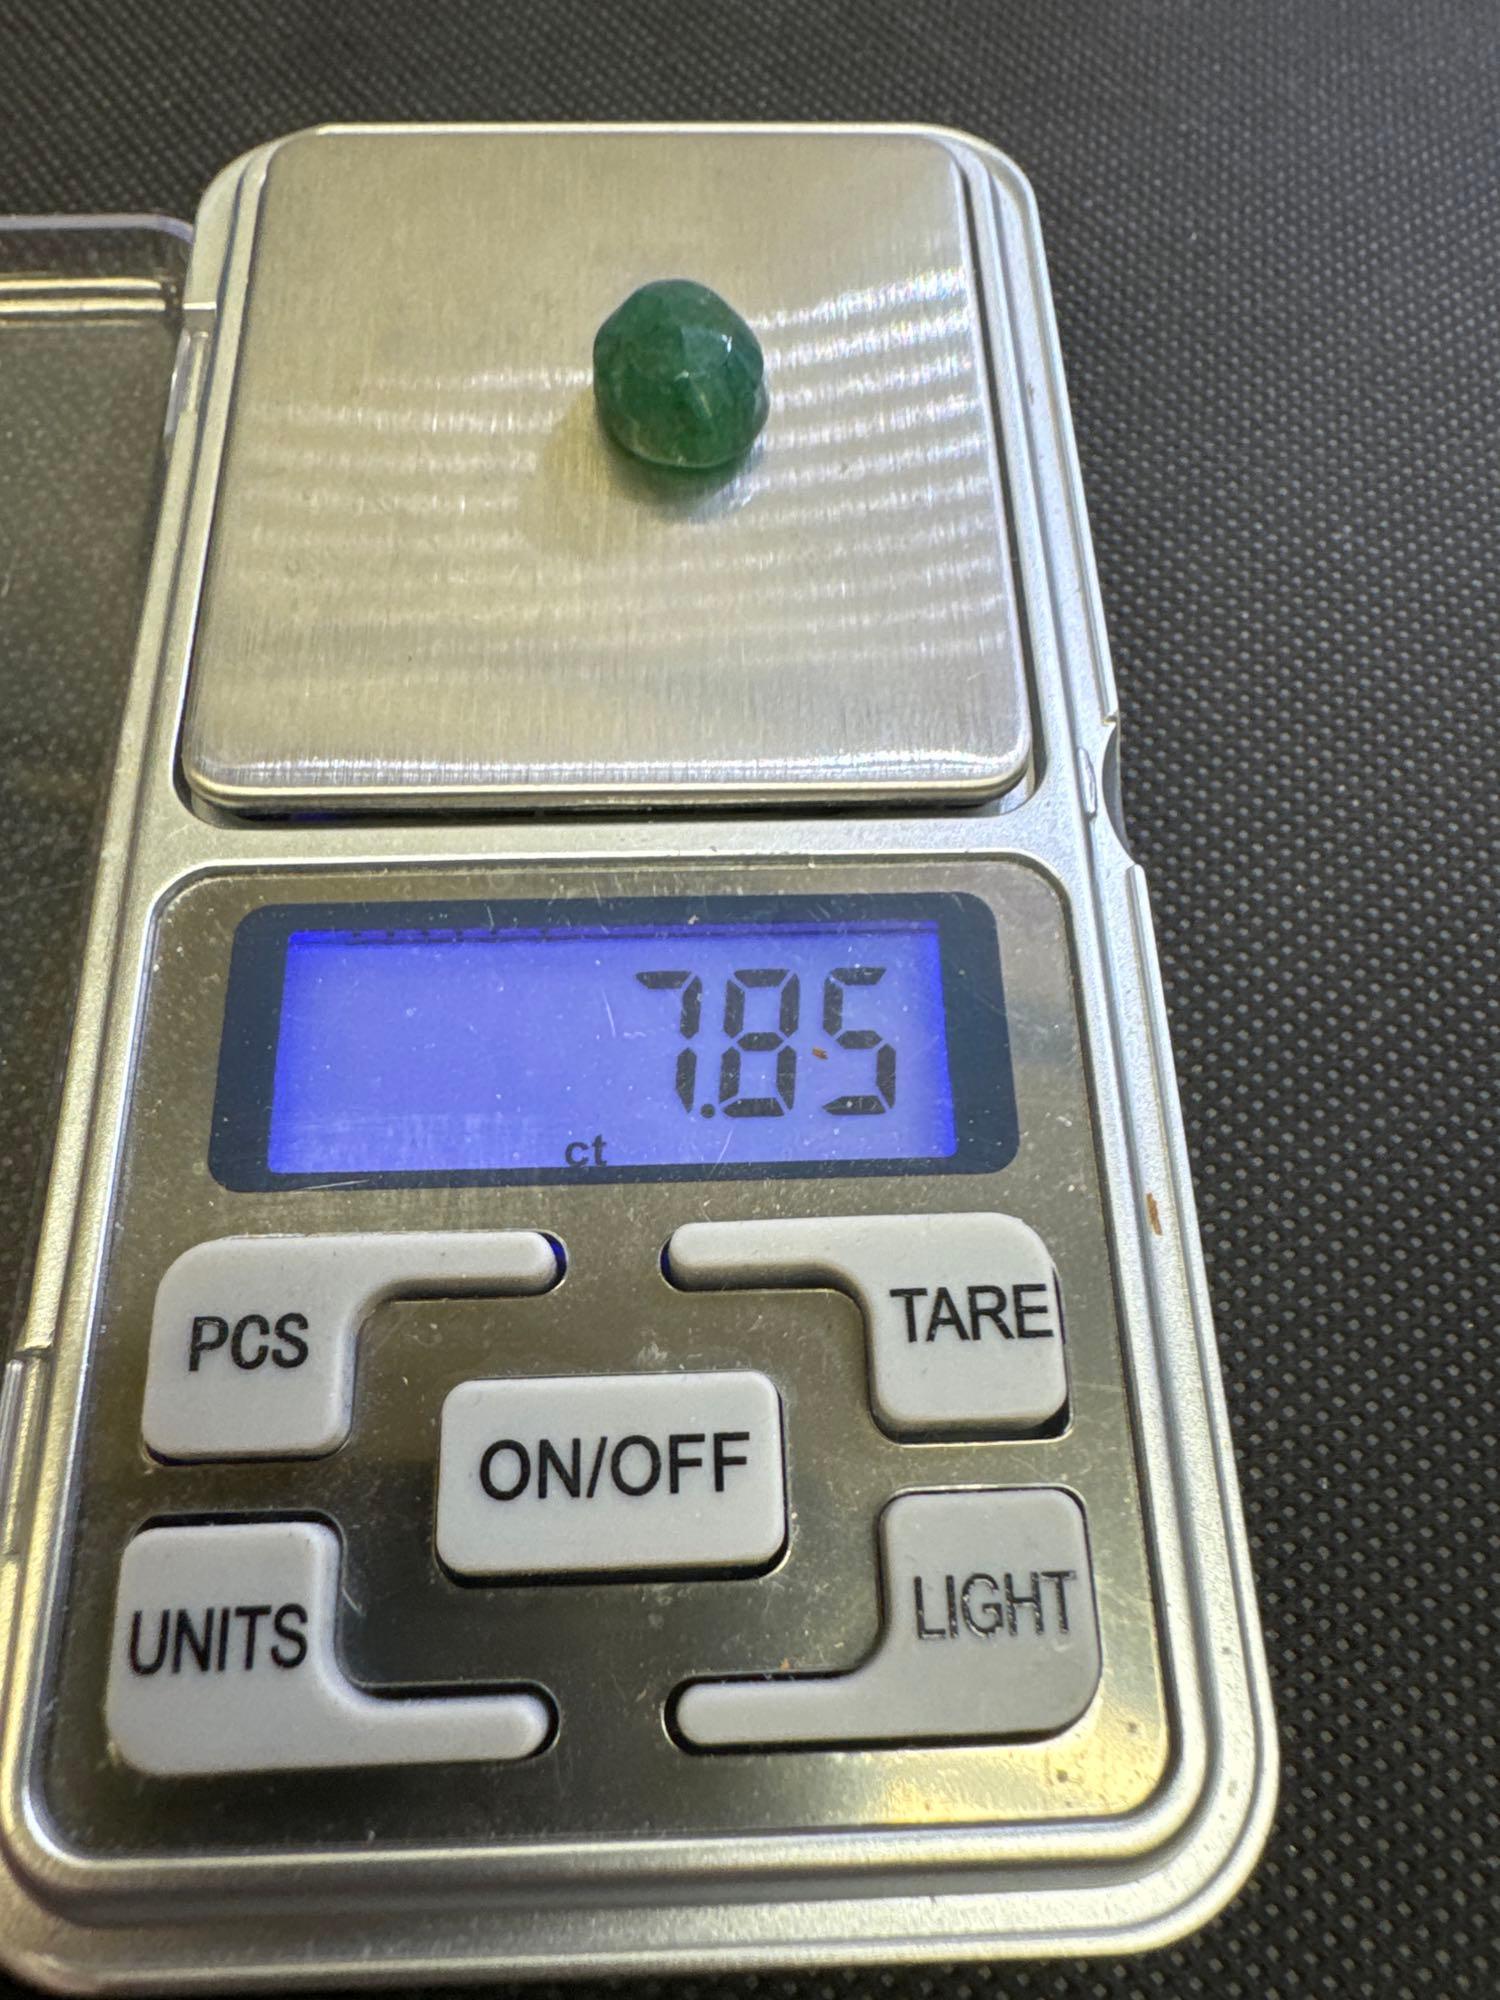 Oval Cut Green Emerald Gemstone 7.85ct